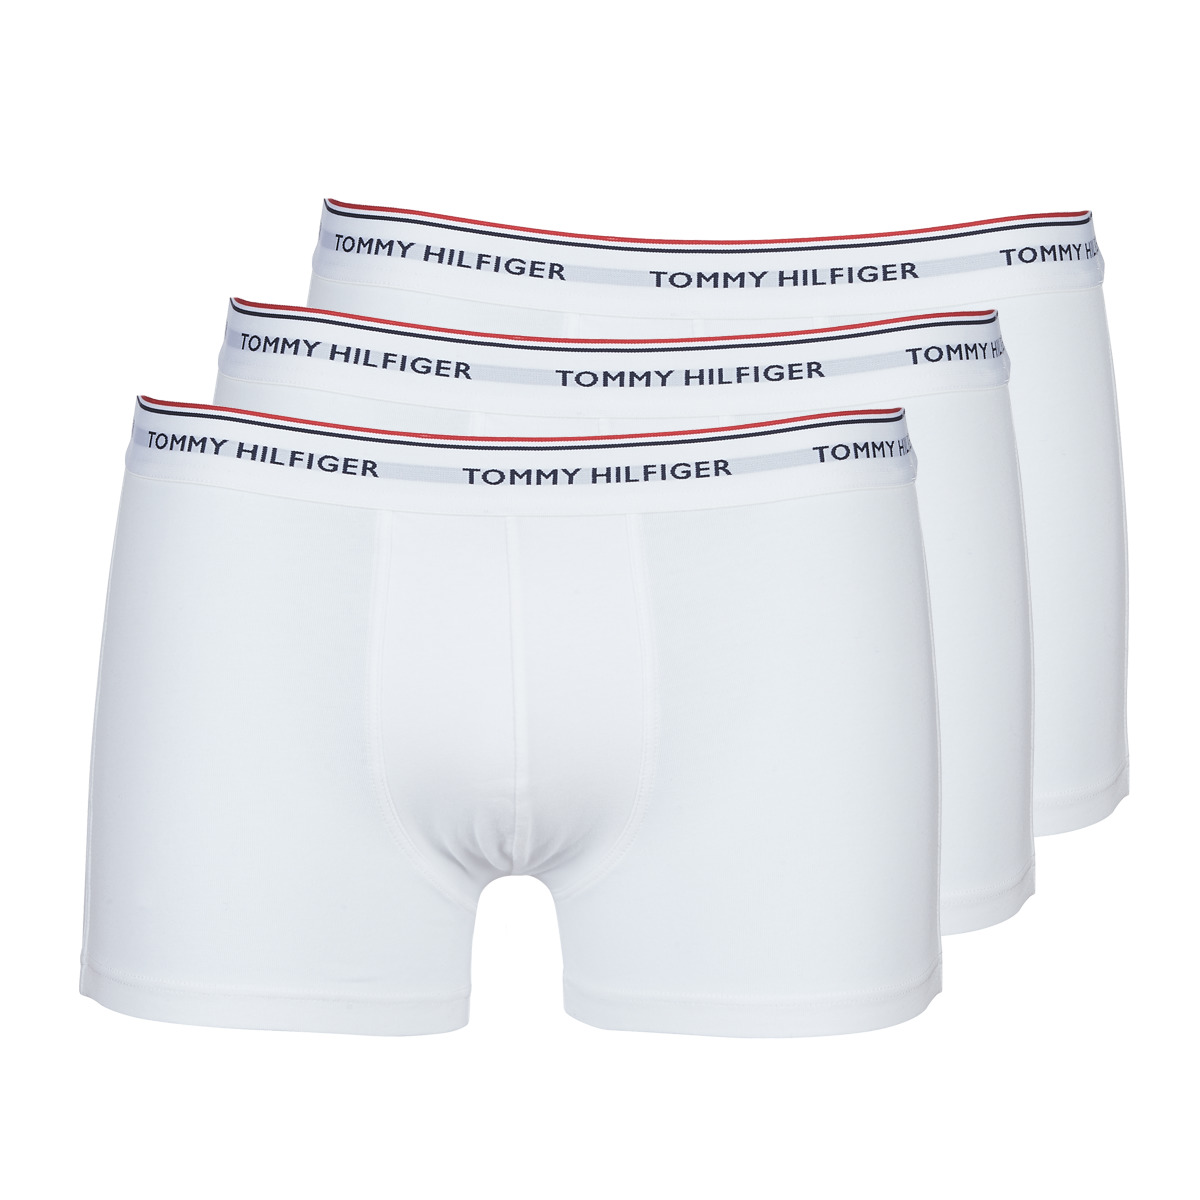 5 Tommy Hilfiger Boxer Briefs Cotton Pack Men's Underwear Classic Fit $64  SALE ! 